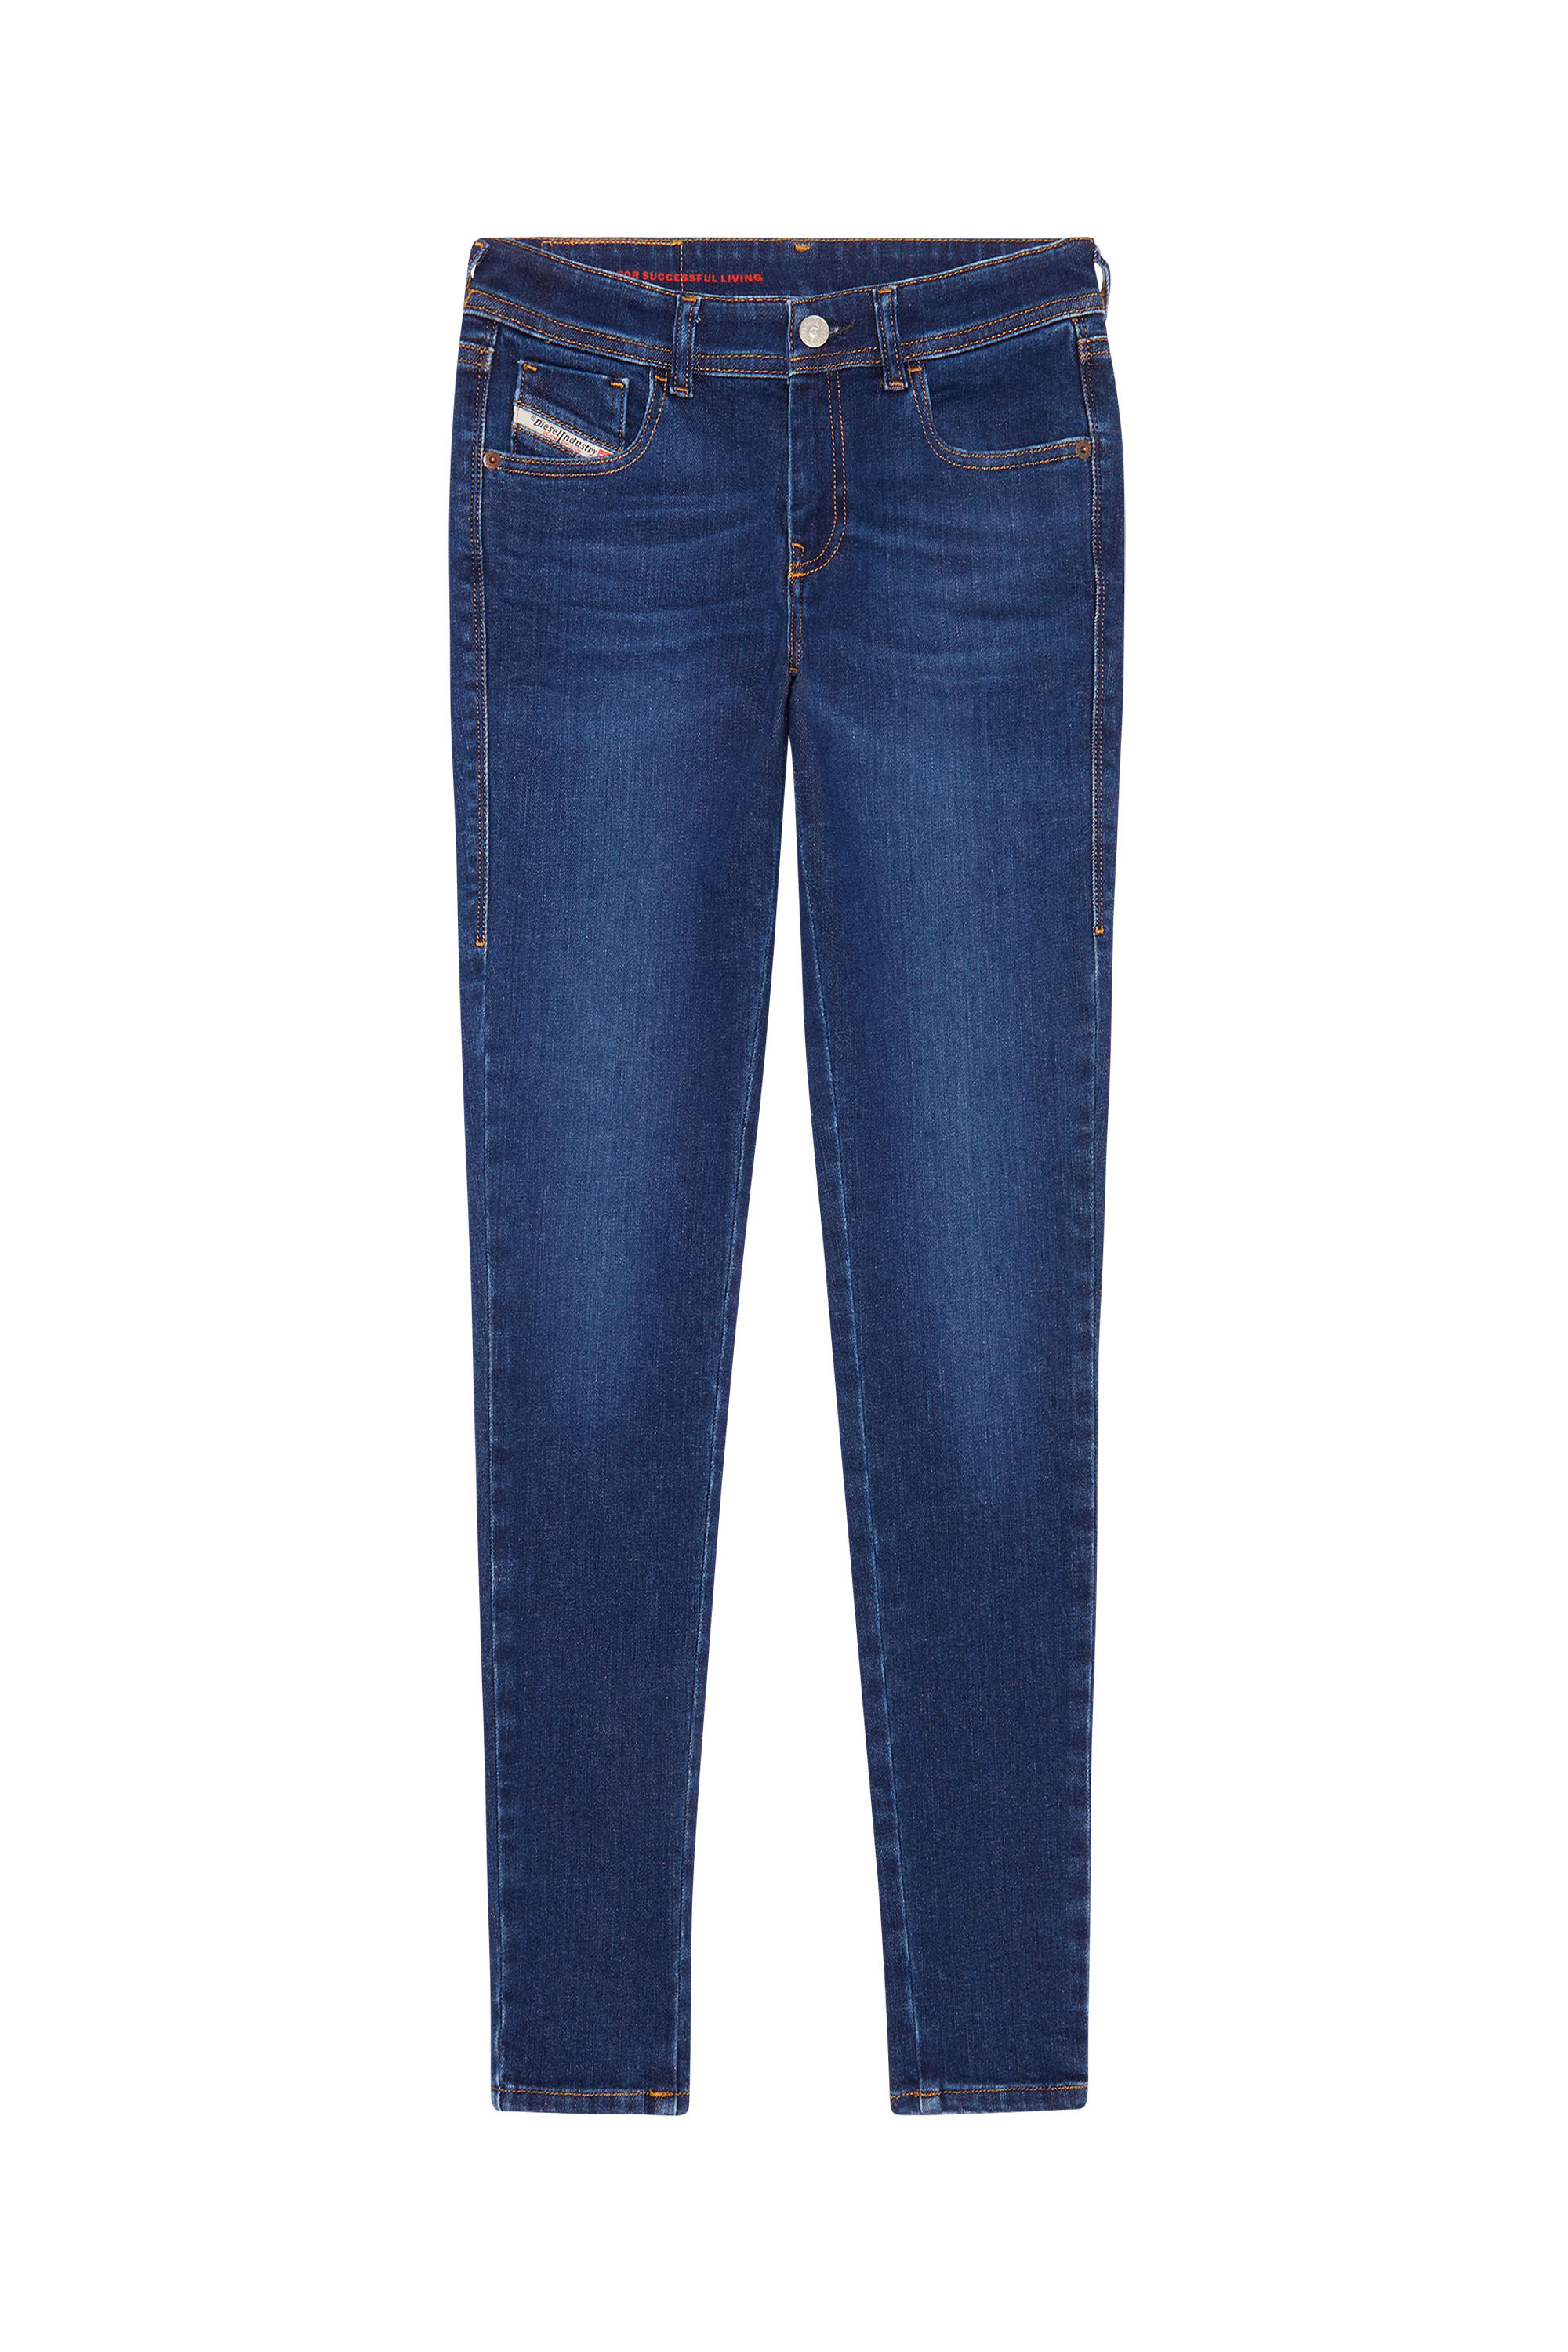 Super skinny Jeans 2018 Slandy-Low 09C19, Bleu Foncé - Jeans